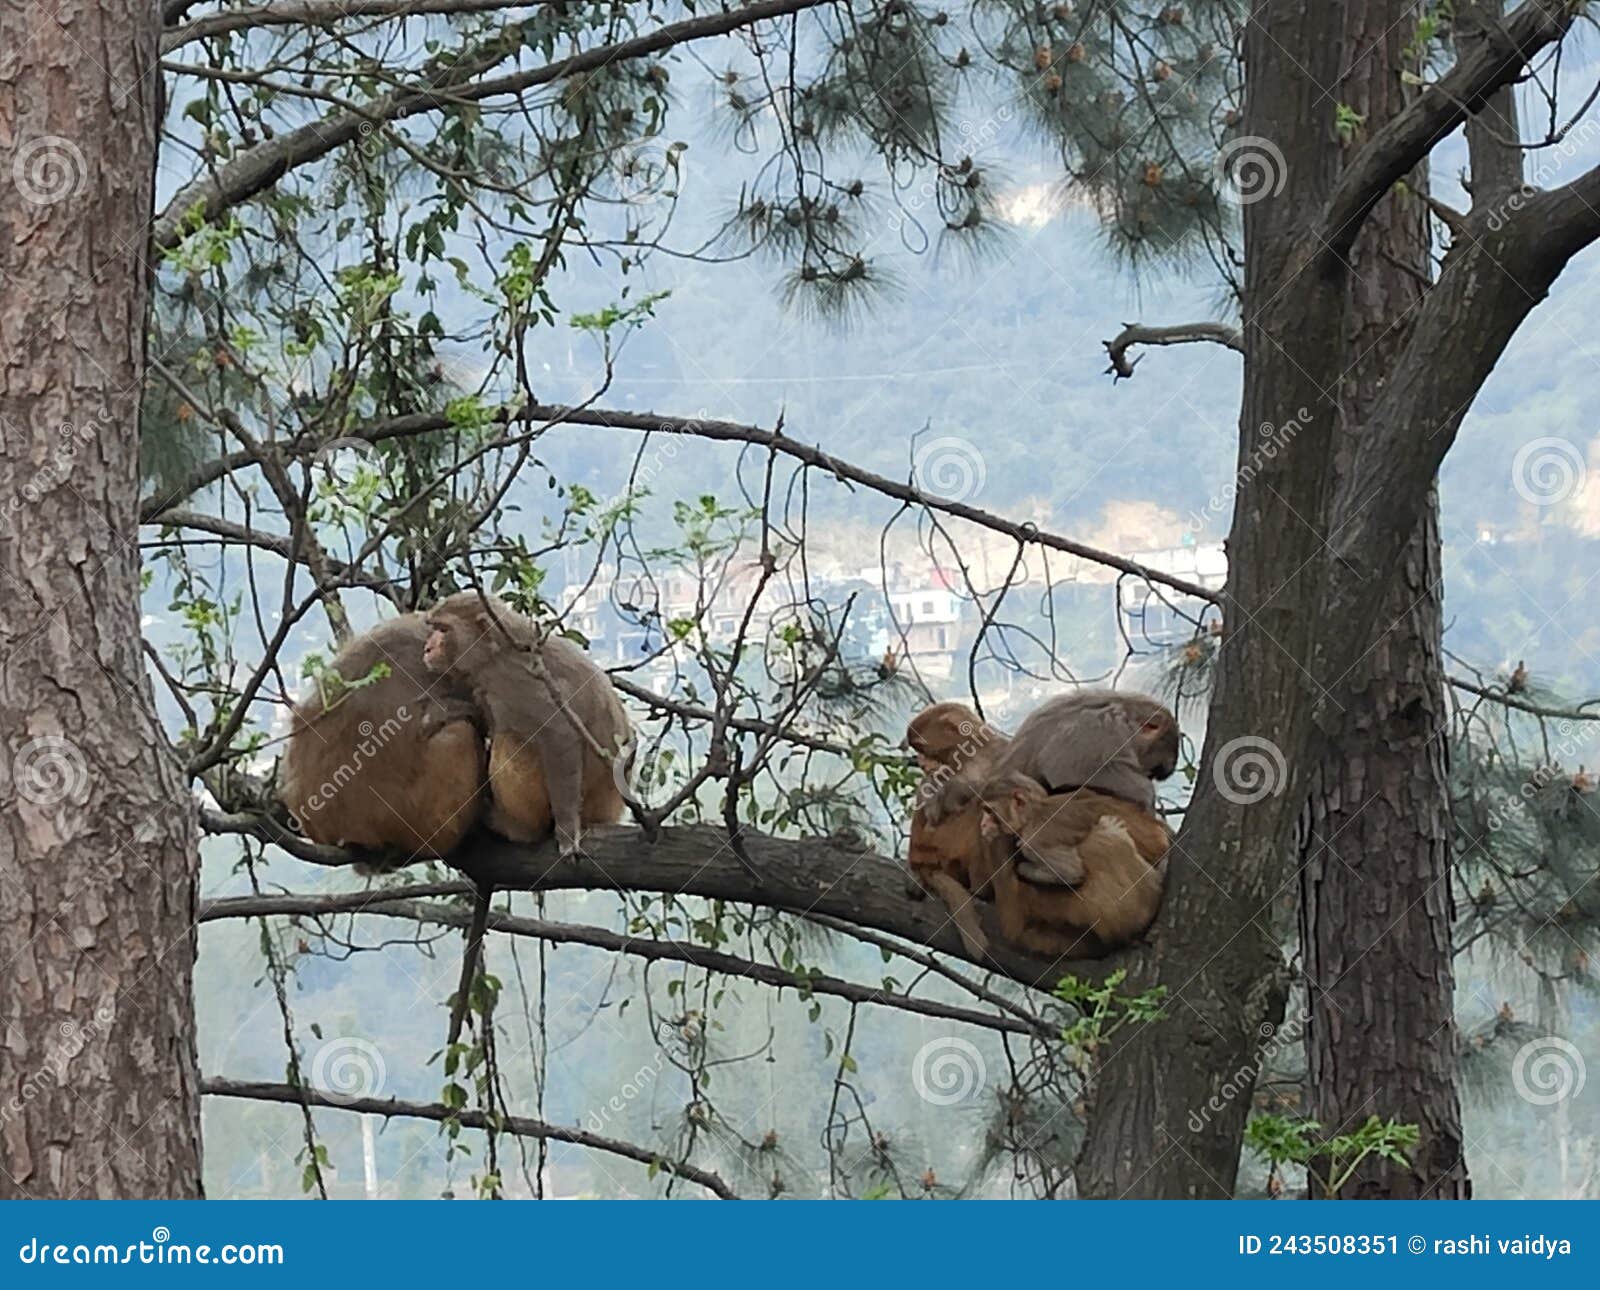 monkeys cuddled up on a tress